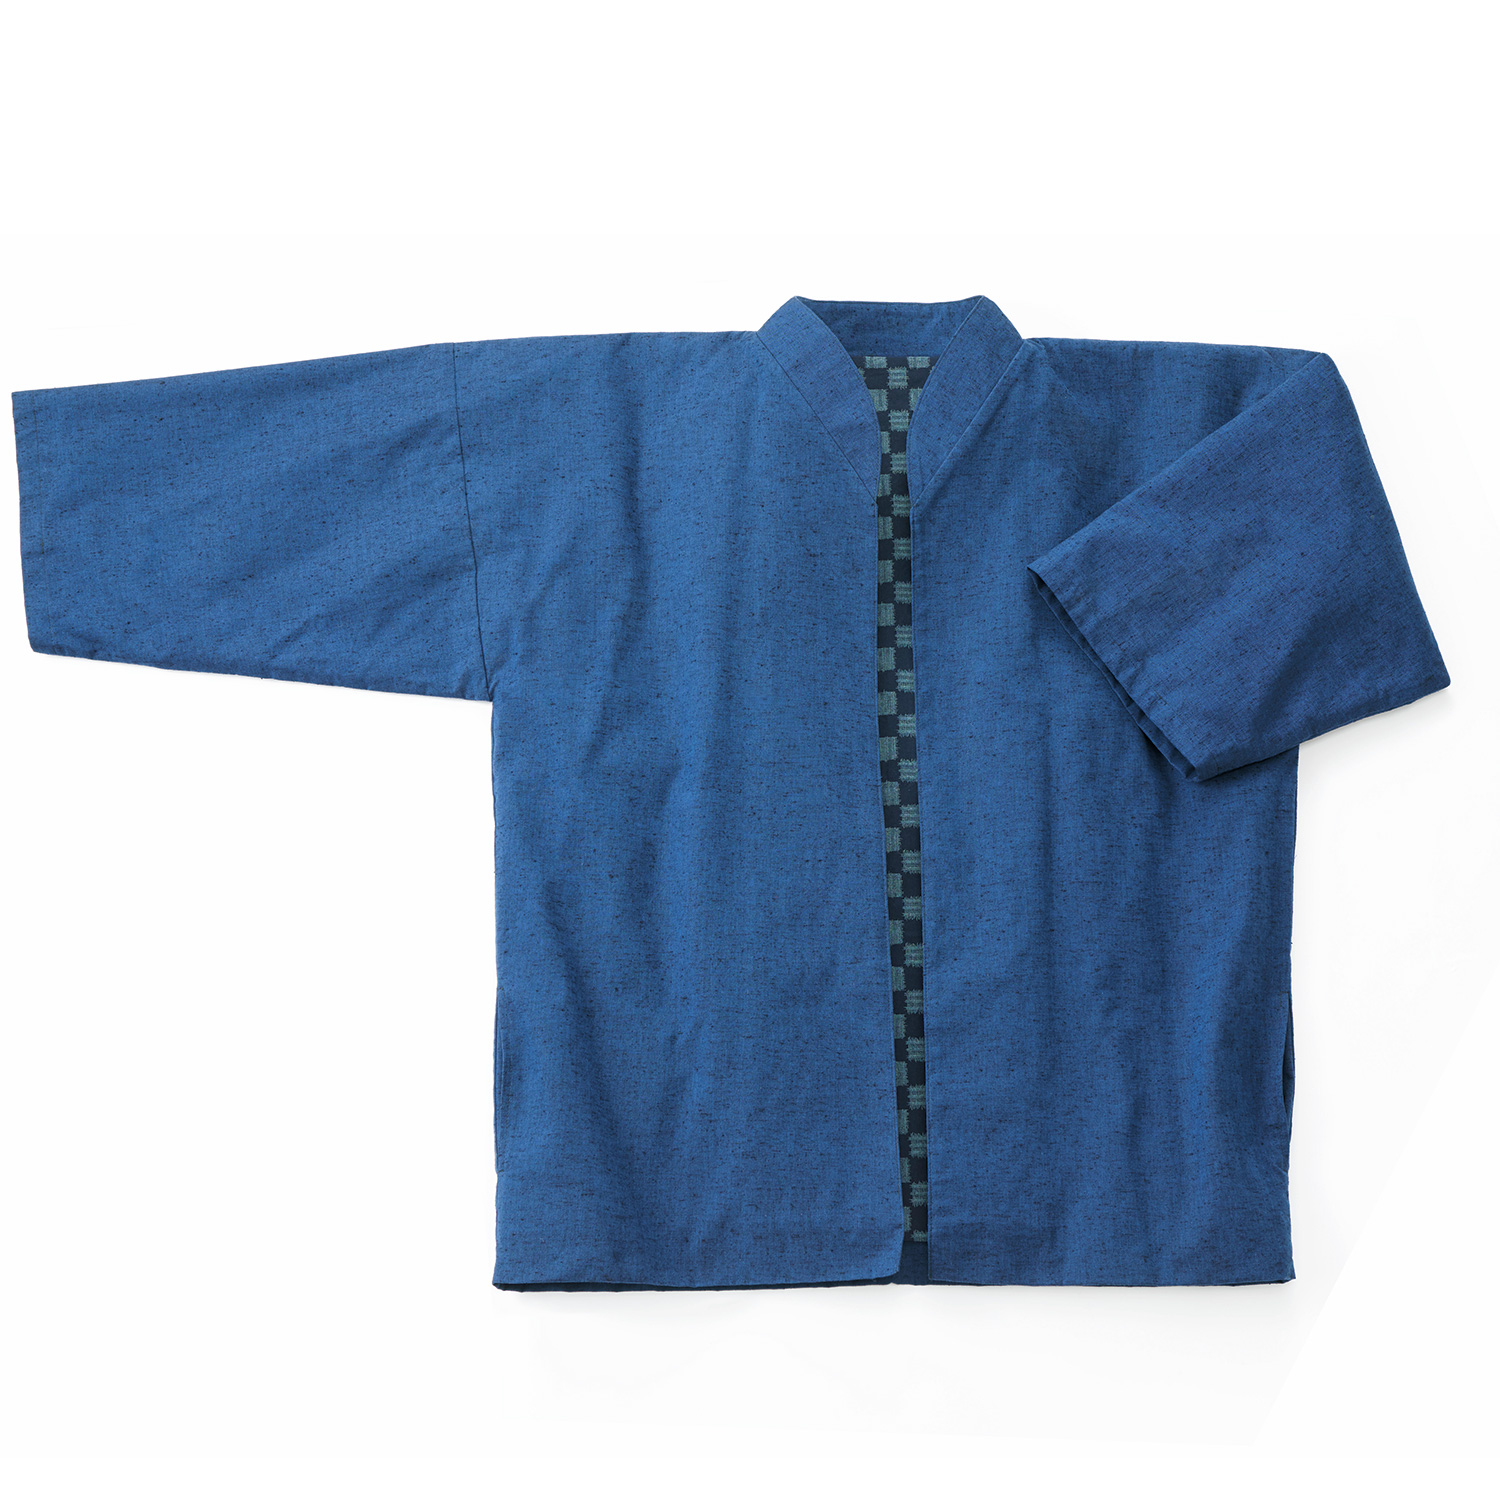 久留米織立ち襟の茶羽織